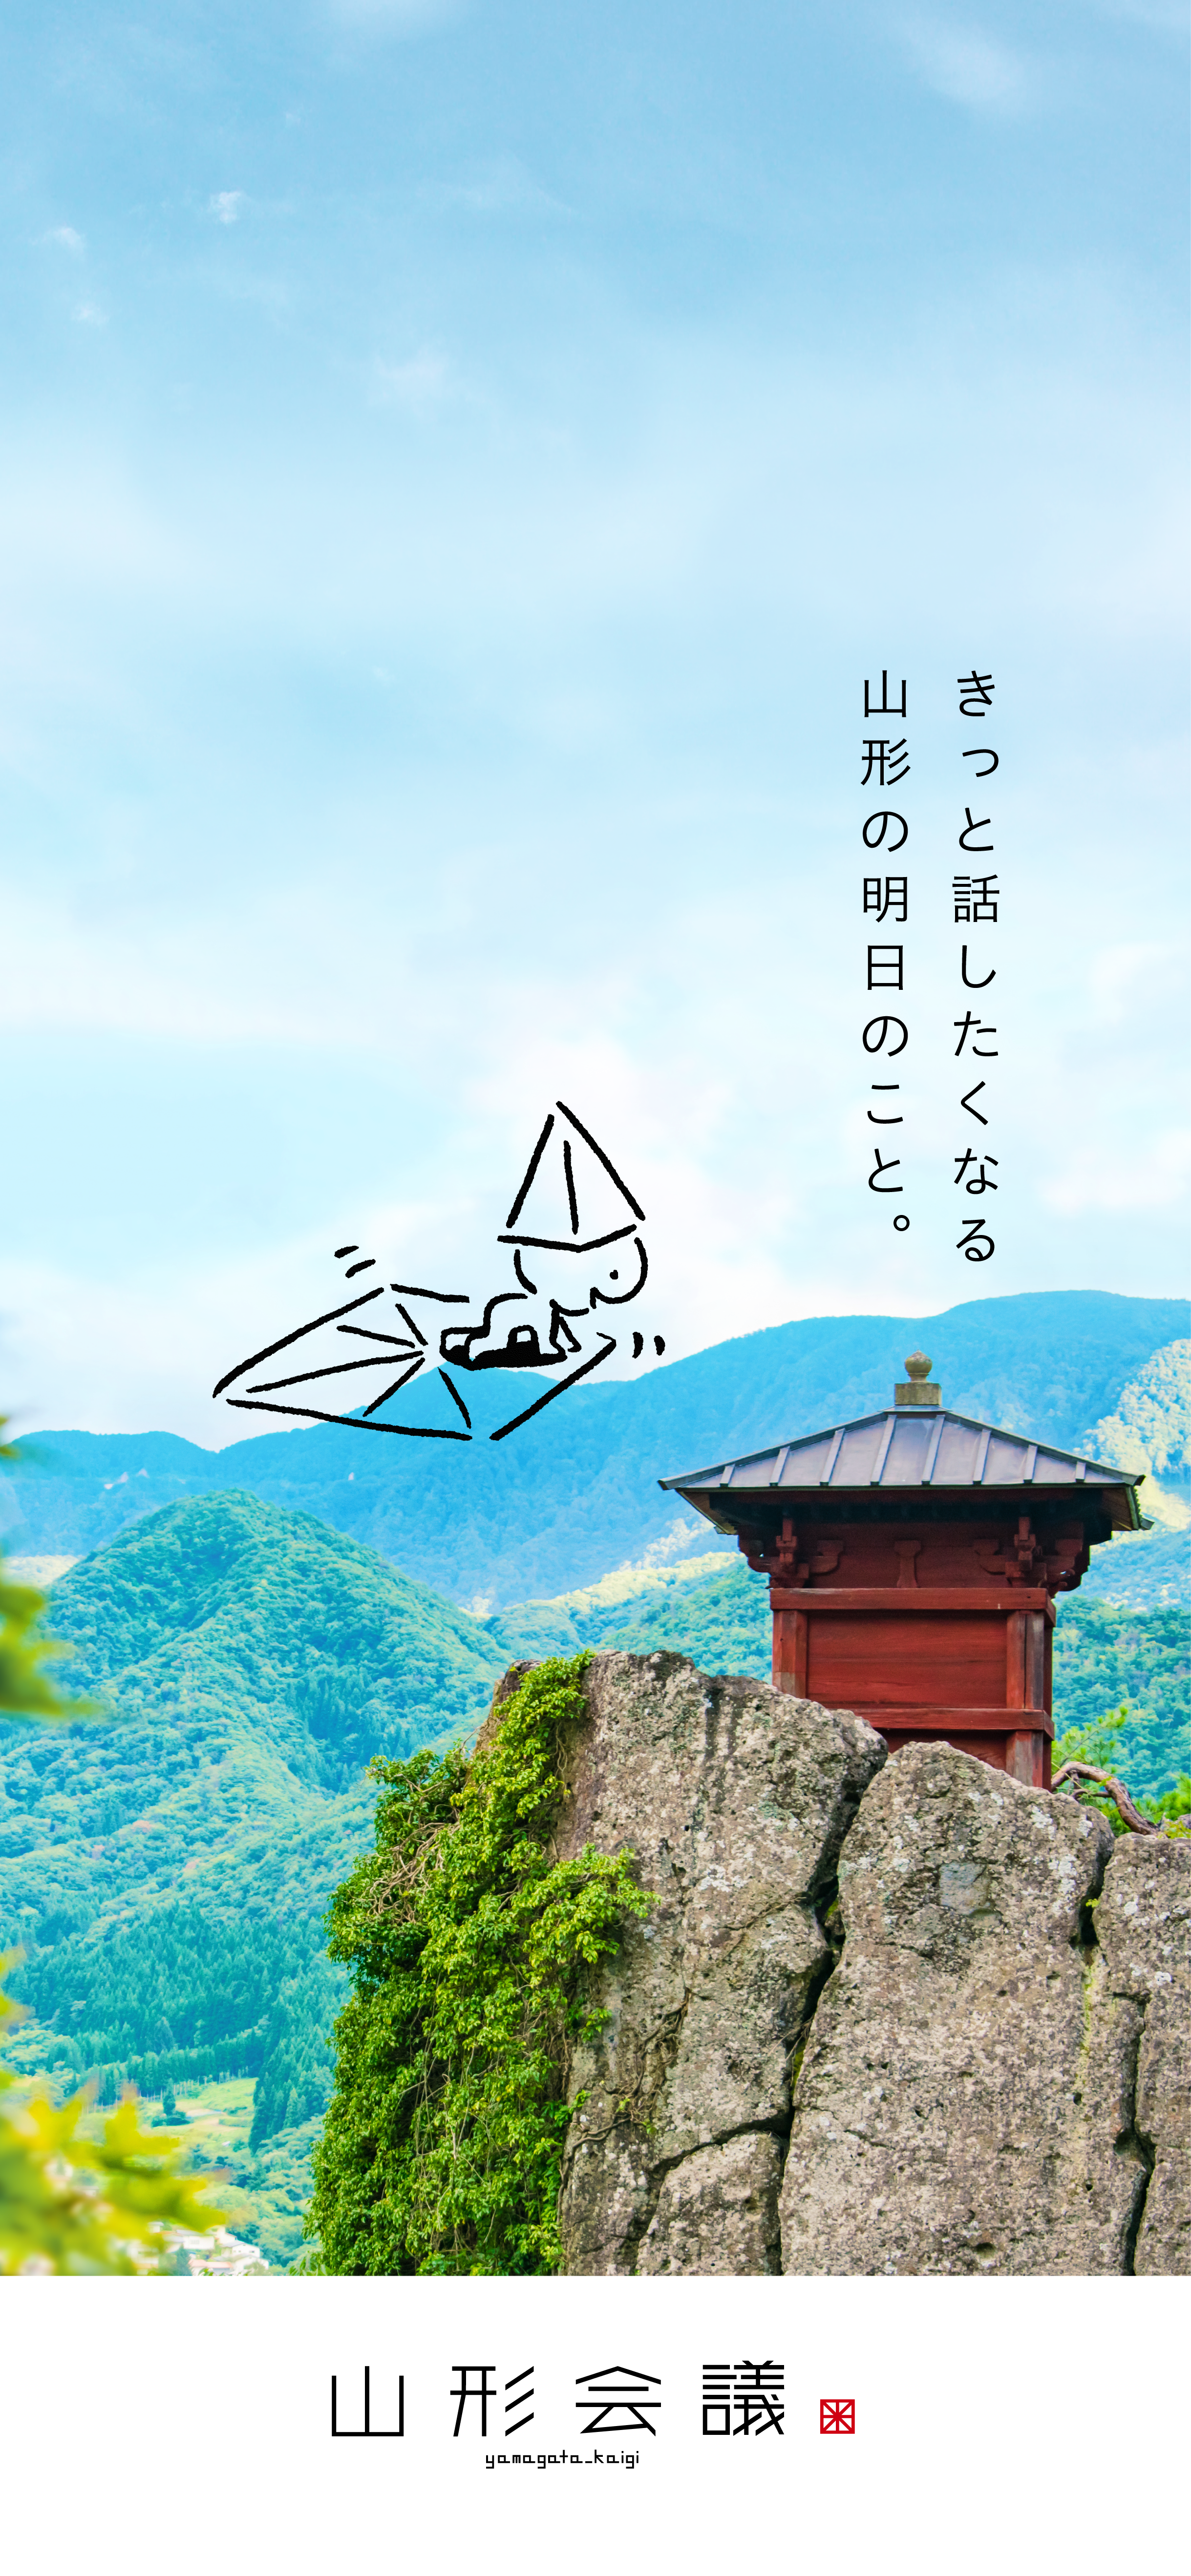 WEBメディア「山形会議®」1周年記念　無料スマホ用壁紙 夏